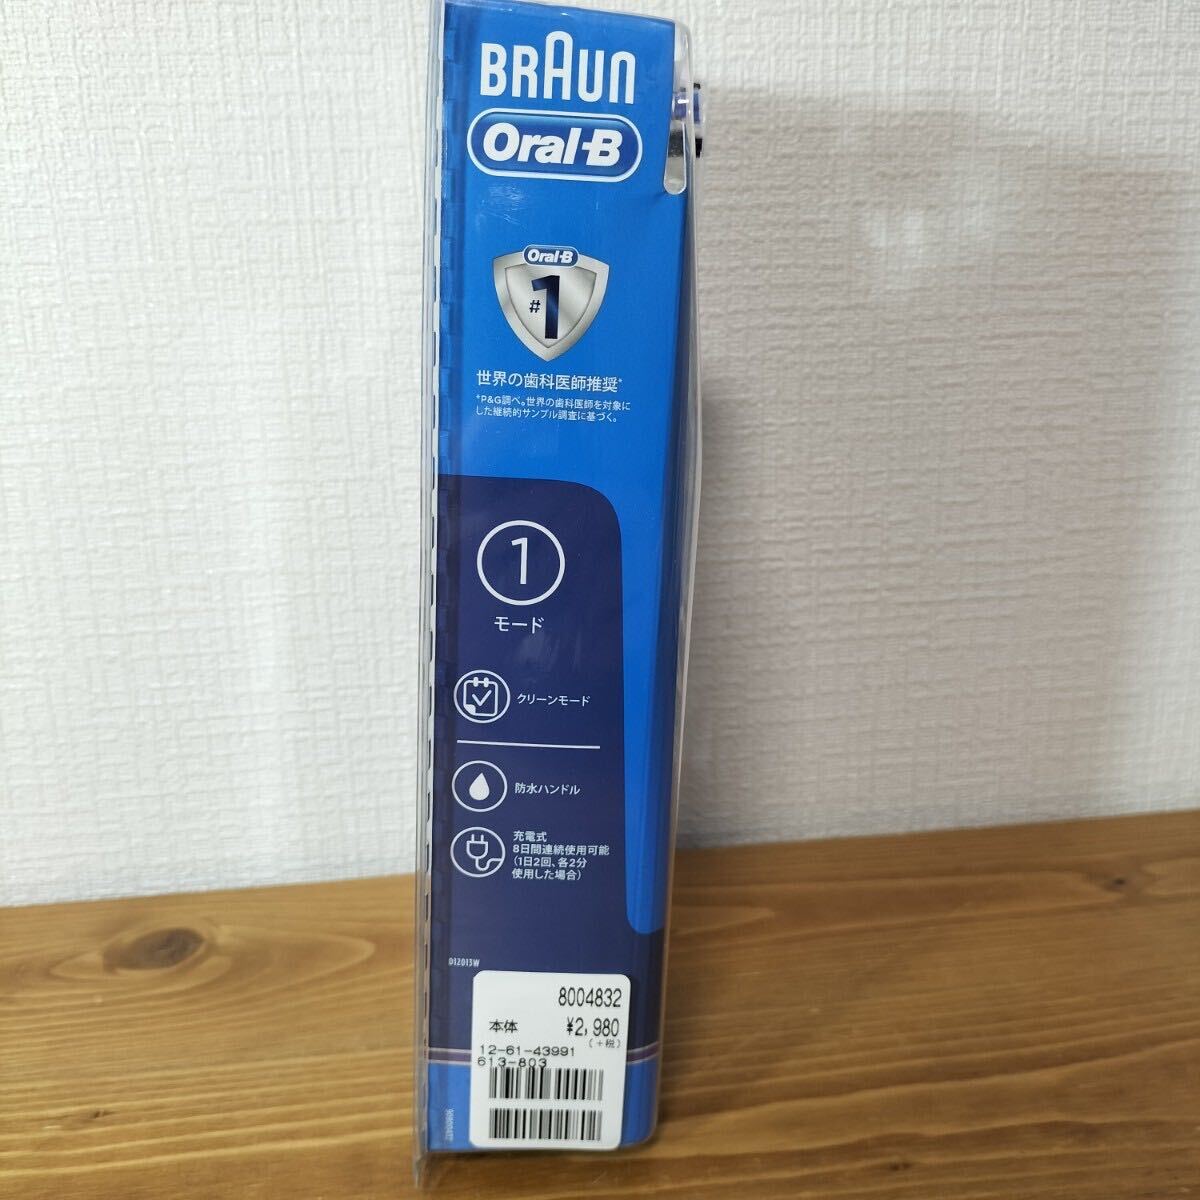 5-88 BRAUN ブラウン Oral-B オーラルB 電動歯ブラシ 充電式電動歯ブラシ D12013W マルチアクションブラシ 歯間ワイパー付きブラシ セットの画像4